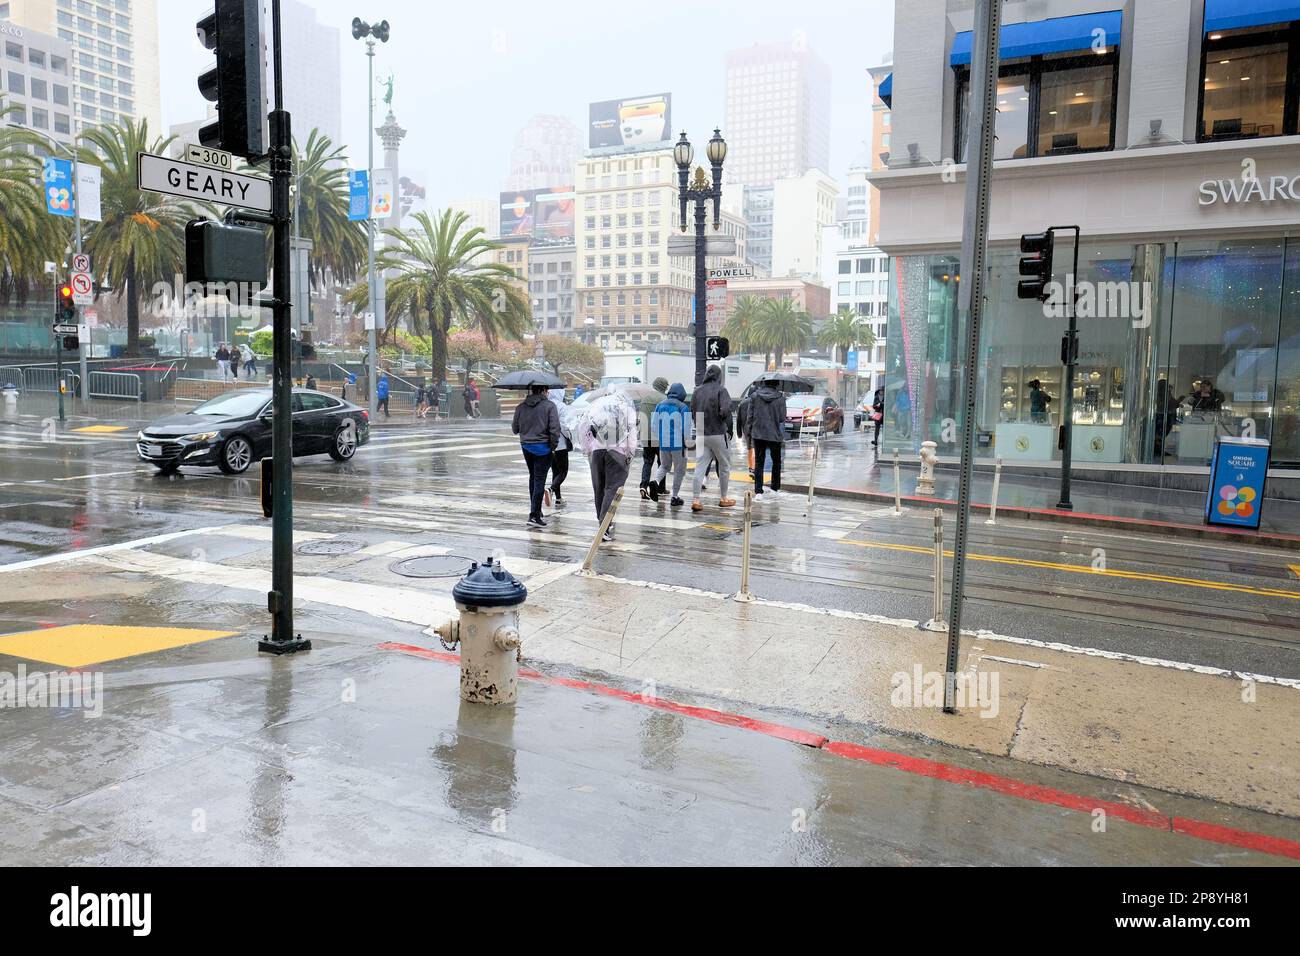 Pedoni e turisti sotto la pioggia nel centro di San Francisco, California; persone in condizioni di pioggia e tempo umido in visita sul marciapiede e strada Foto Stock